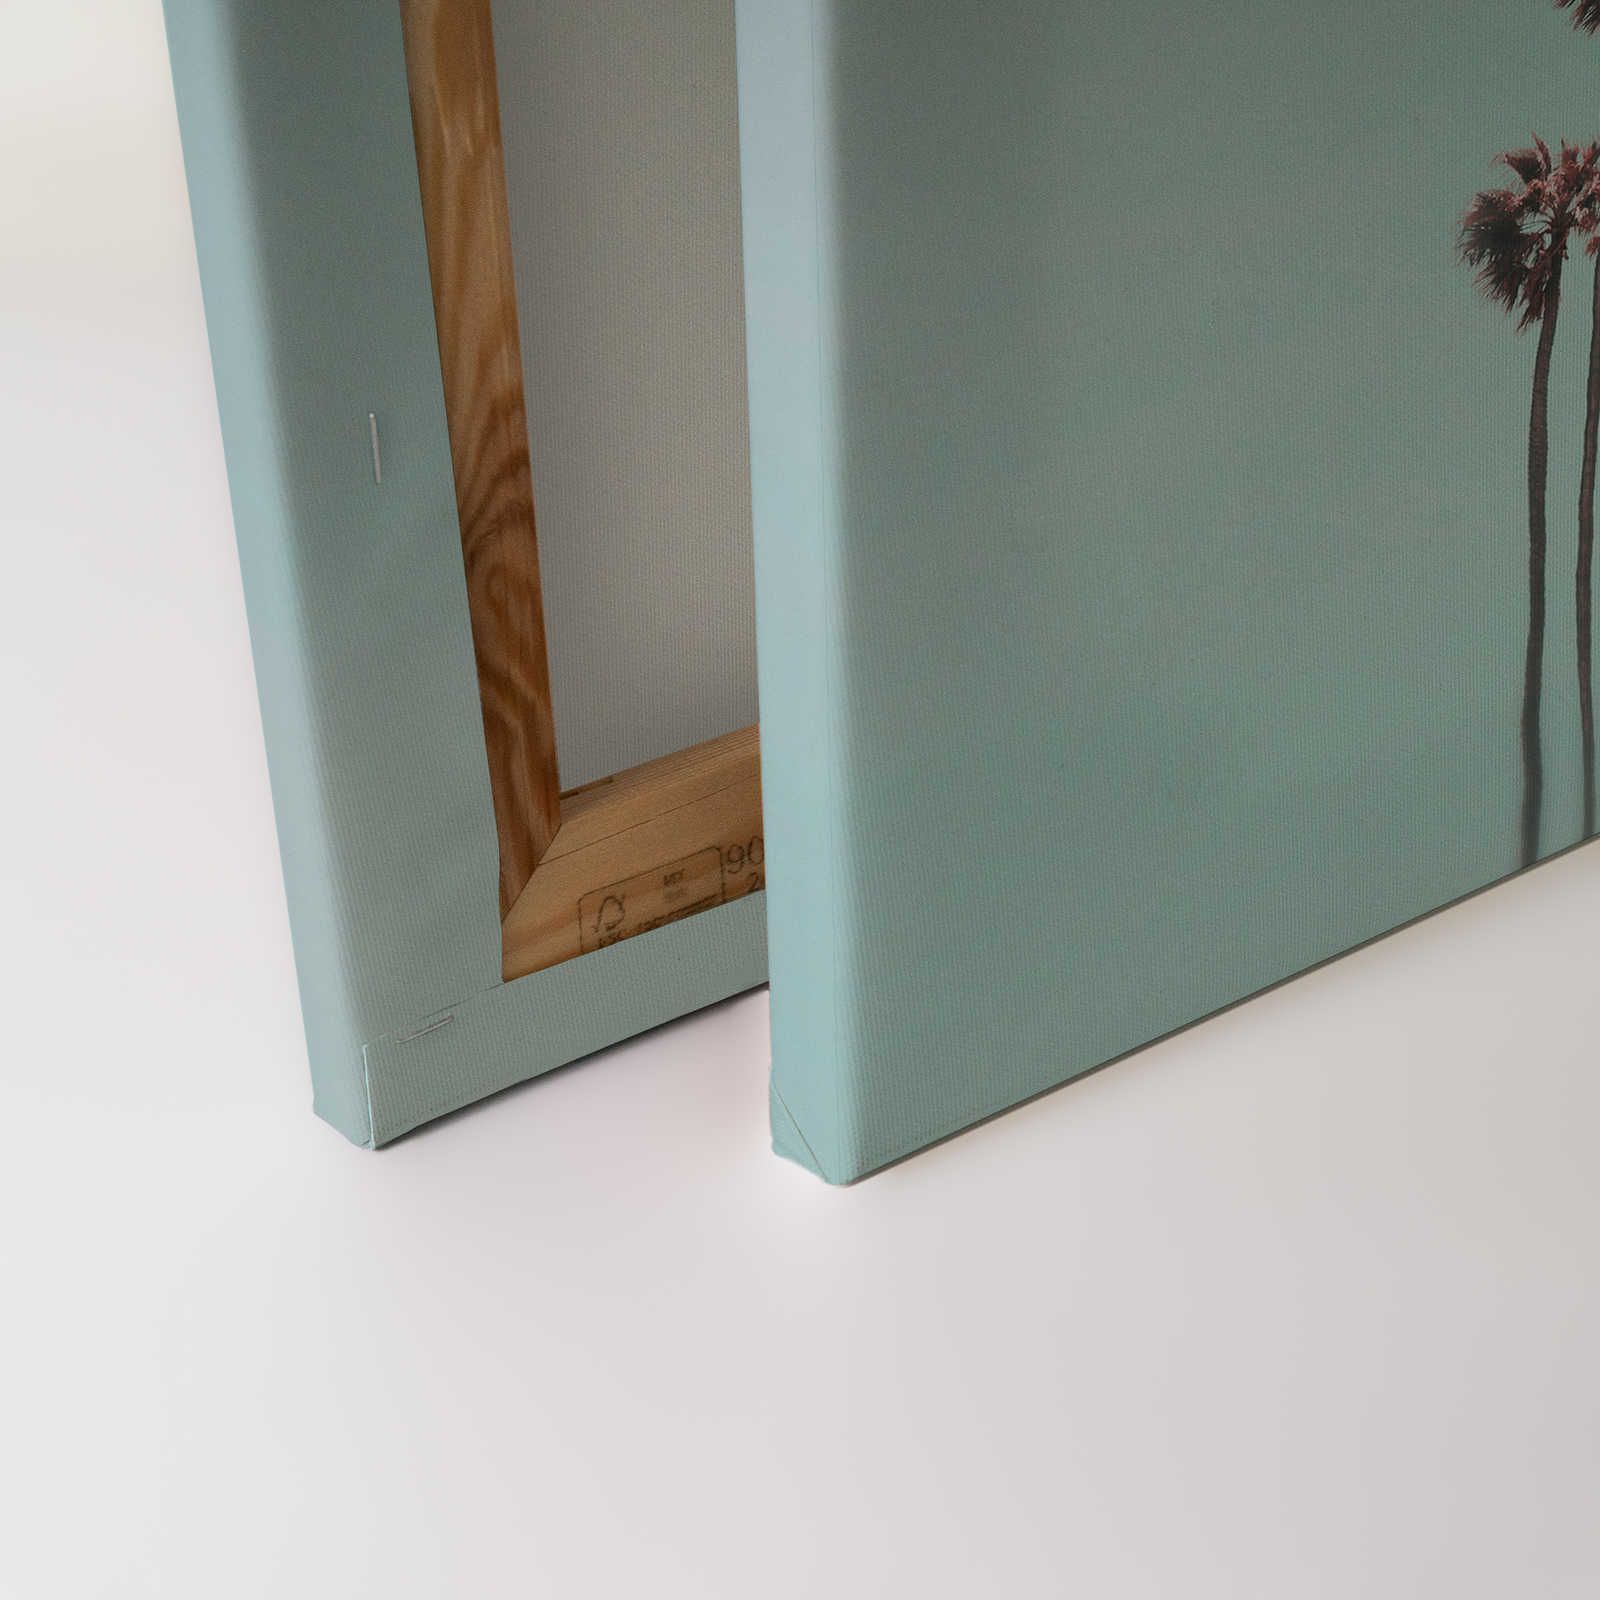             Tableau toile Palmiers & ciel pour une ambiance de plage en turquoise & rose - 0,90 m x 0,60 m
        